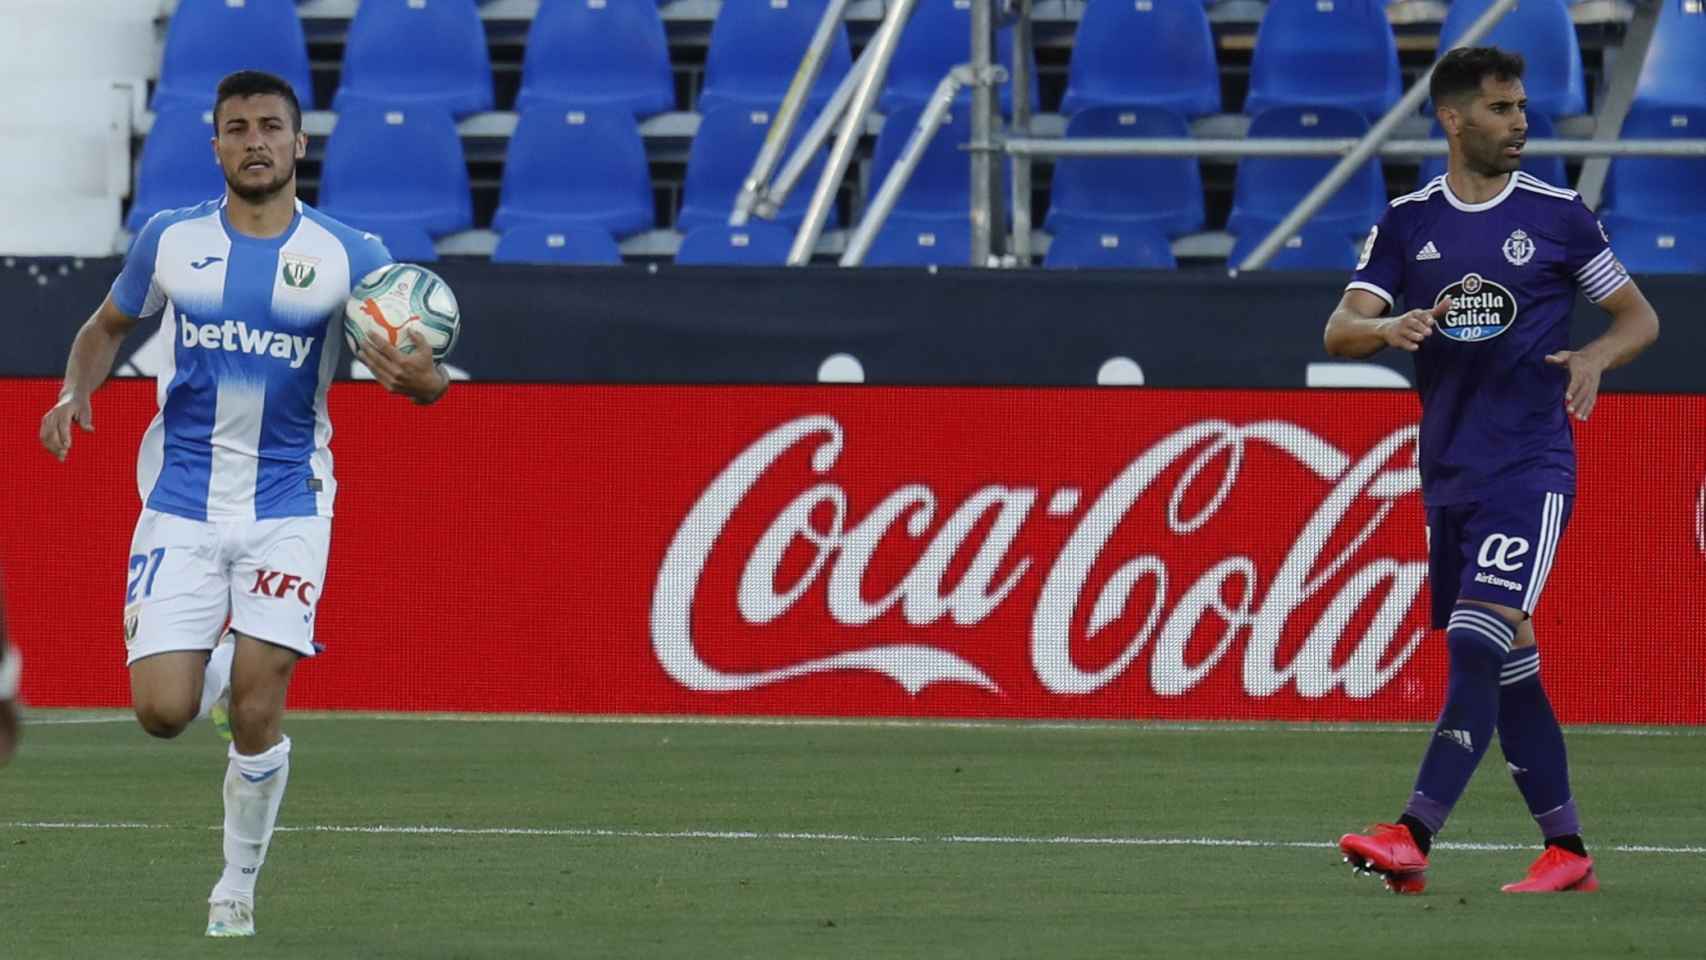 Óscar Rodríguez vuelve a su campo con el balón tras marcar el penalti ante el Real Valladolid